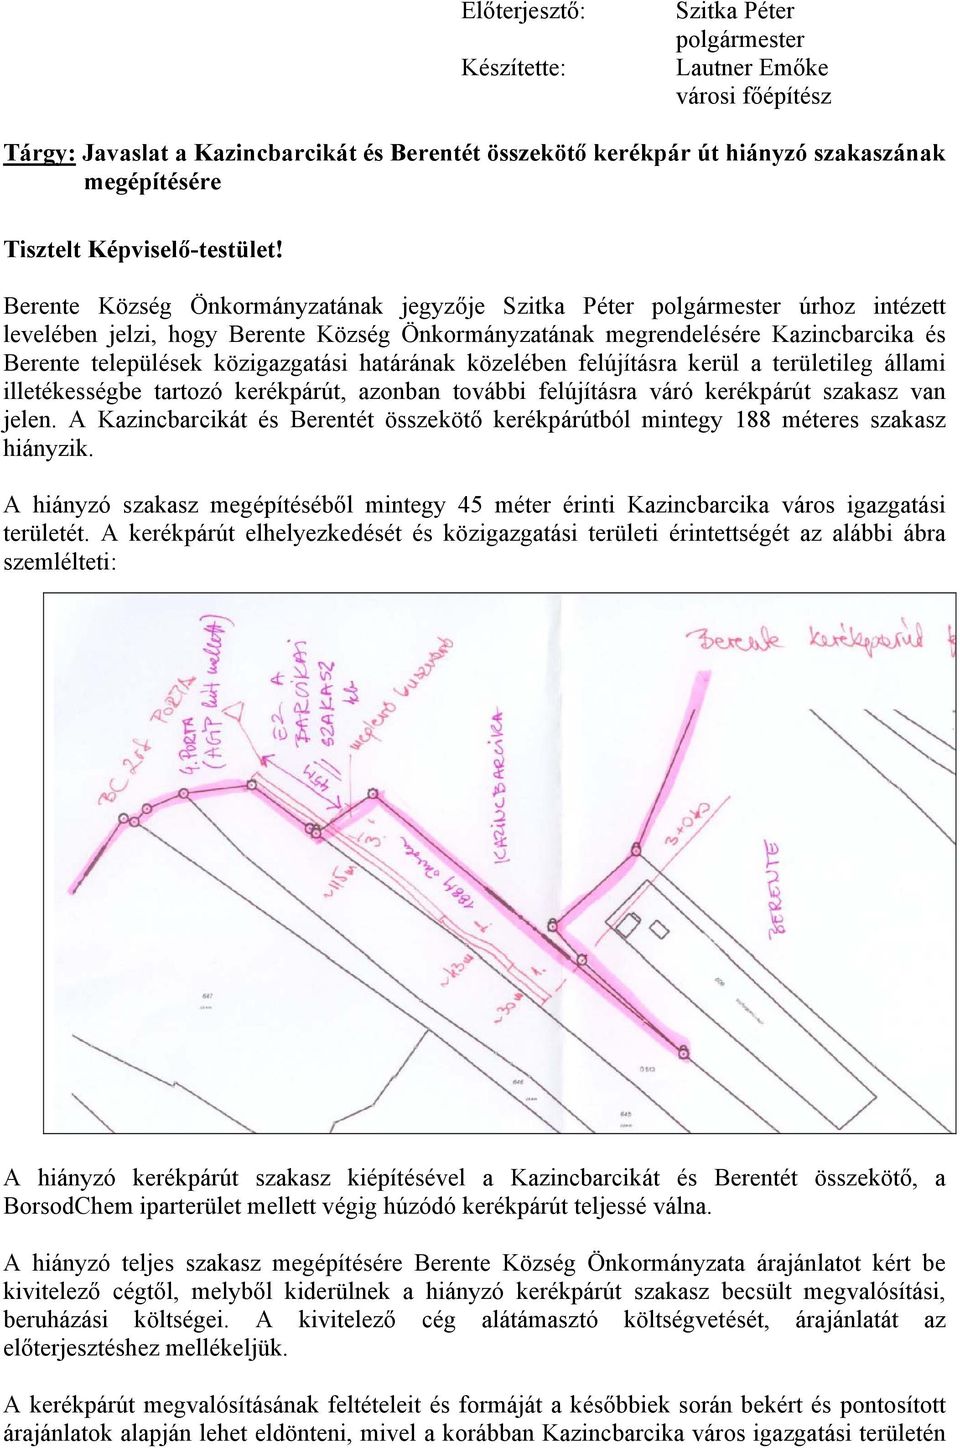 Berente Község Önkormányzatának jegyzője Szitka Péter polgármester úrhoz intézett levelében jelzi, hogy Berente Község Önkormányzatának megrendelésére Kazincbarcika és Berente települések